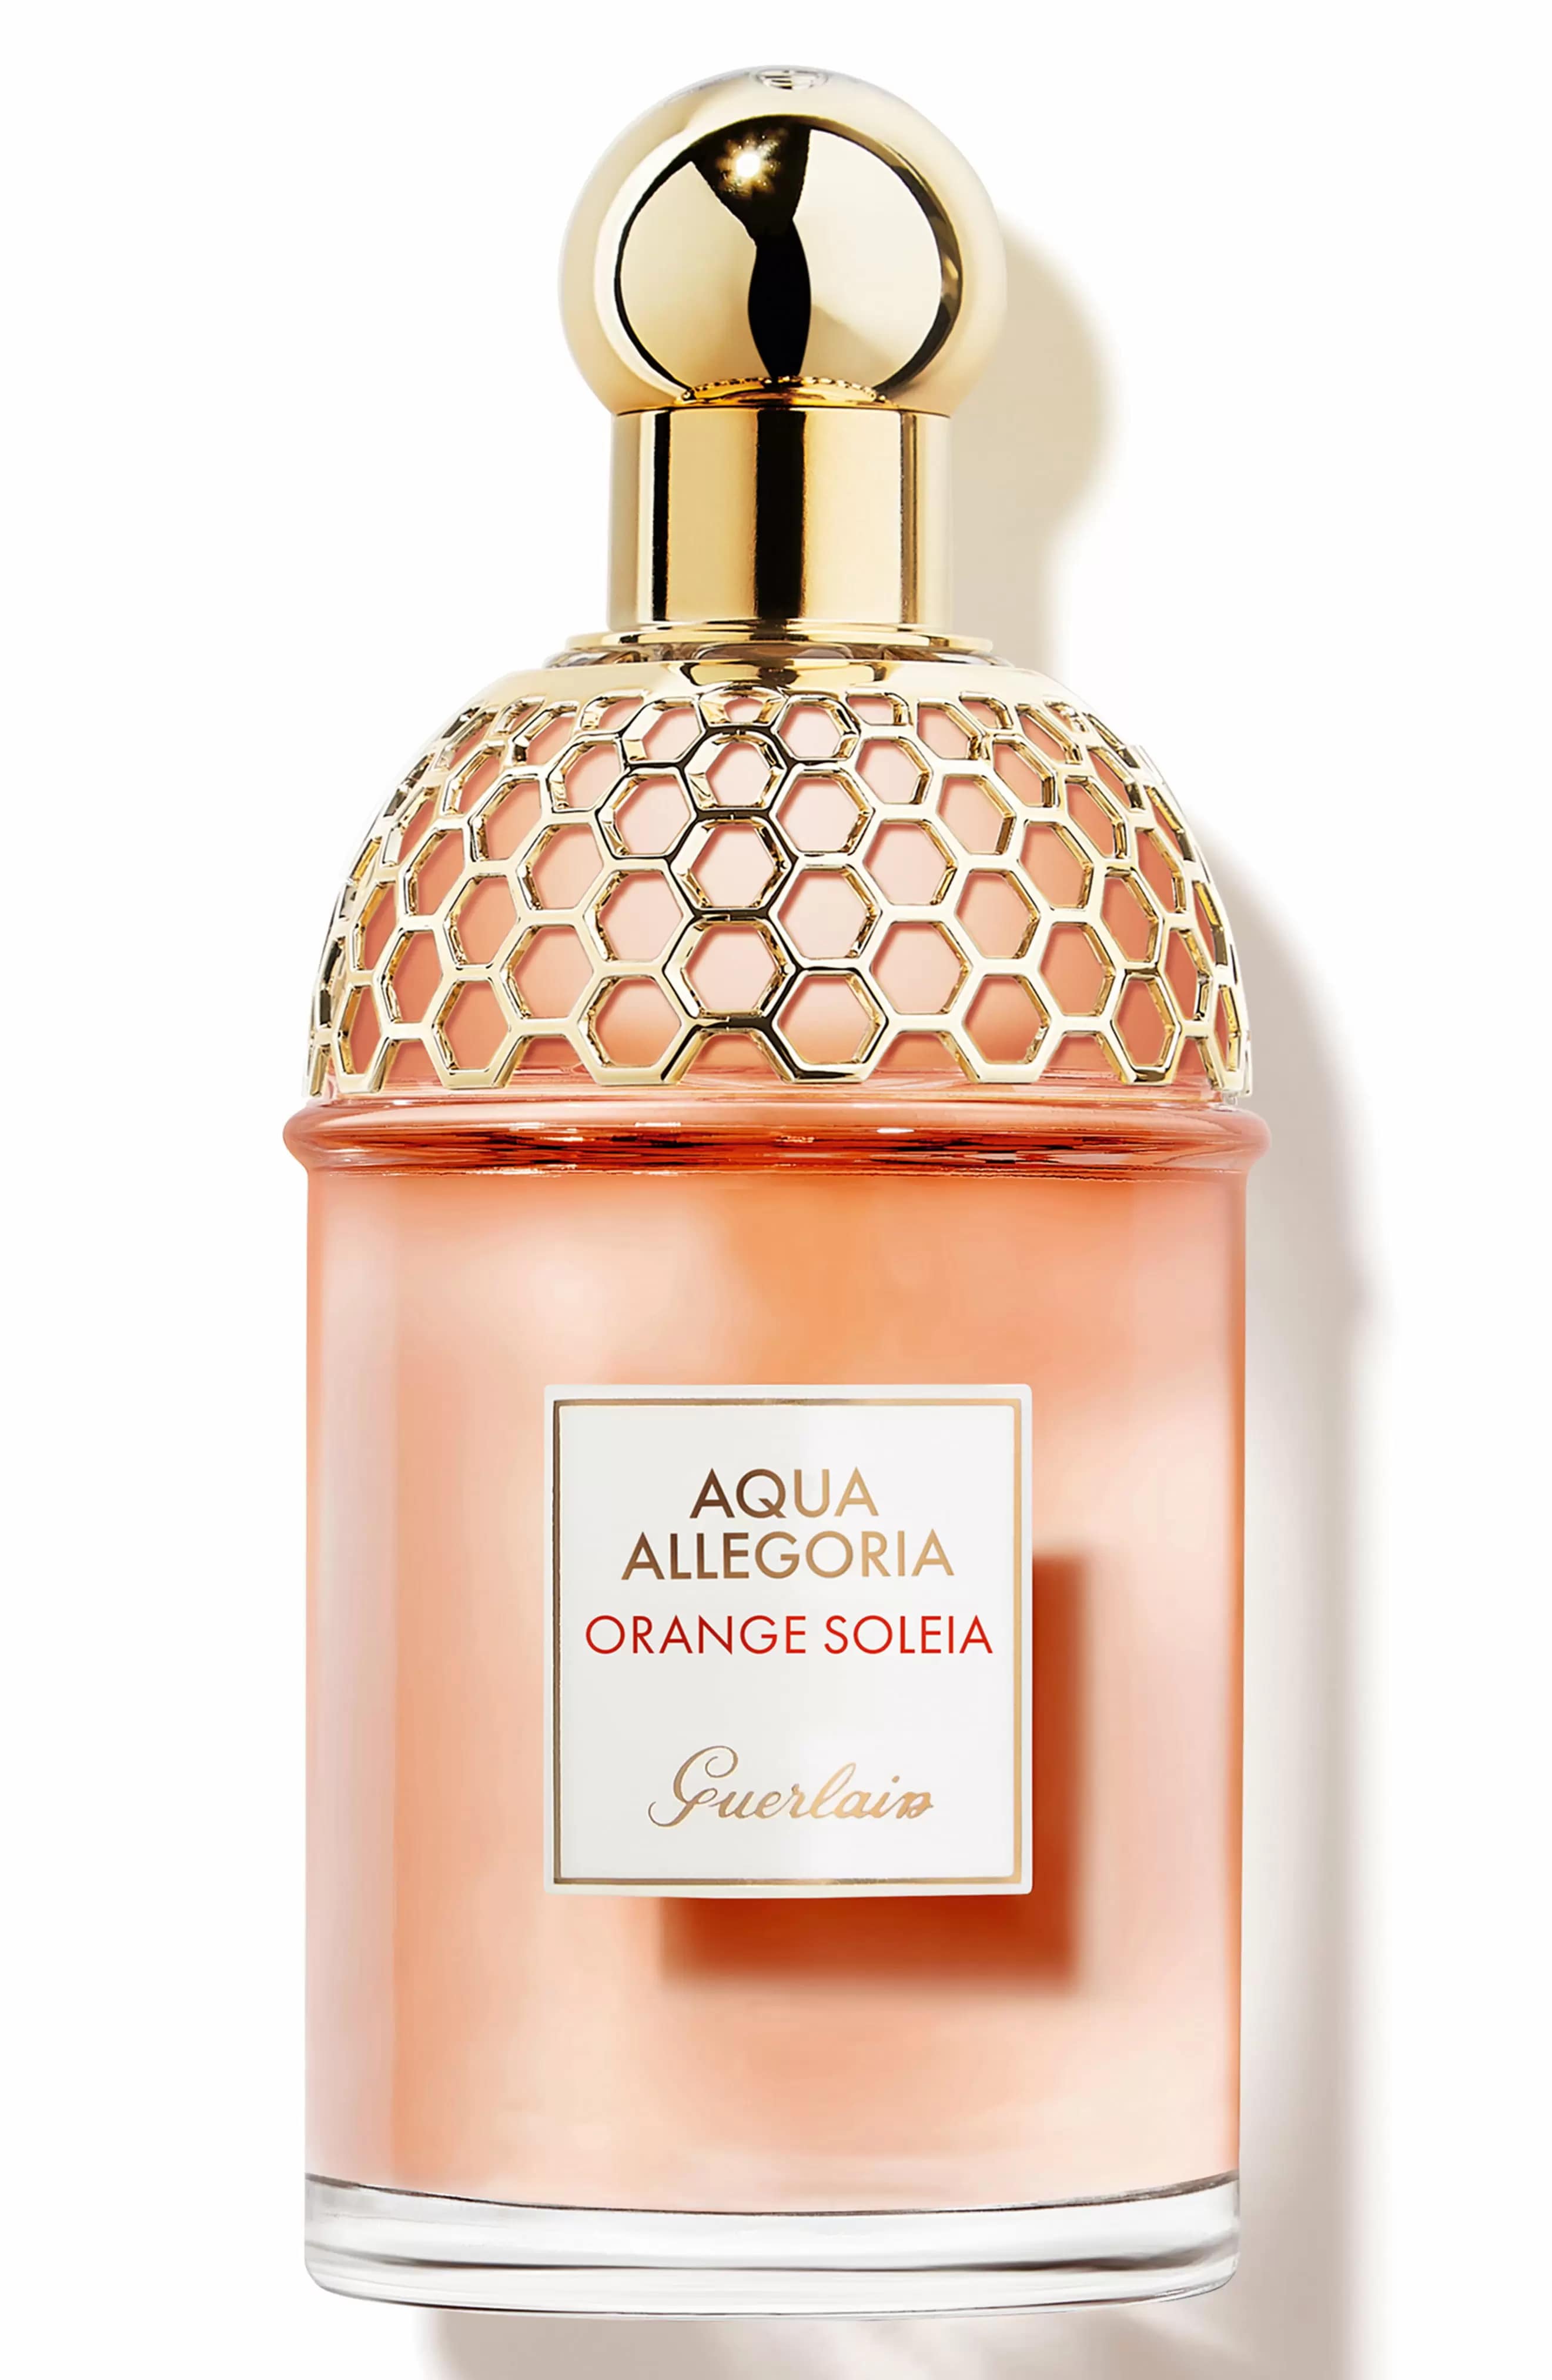 Guerlain Aqua Allegoria Orange Soleia EDT Perfume for Women by Guerlain